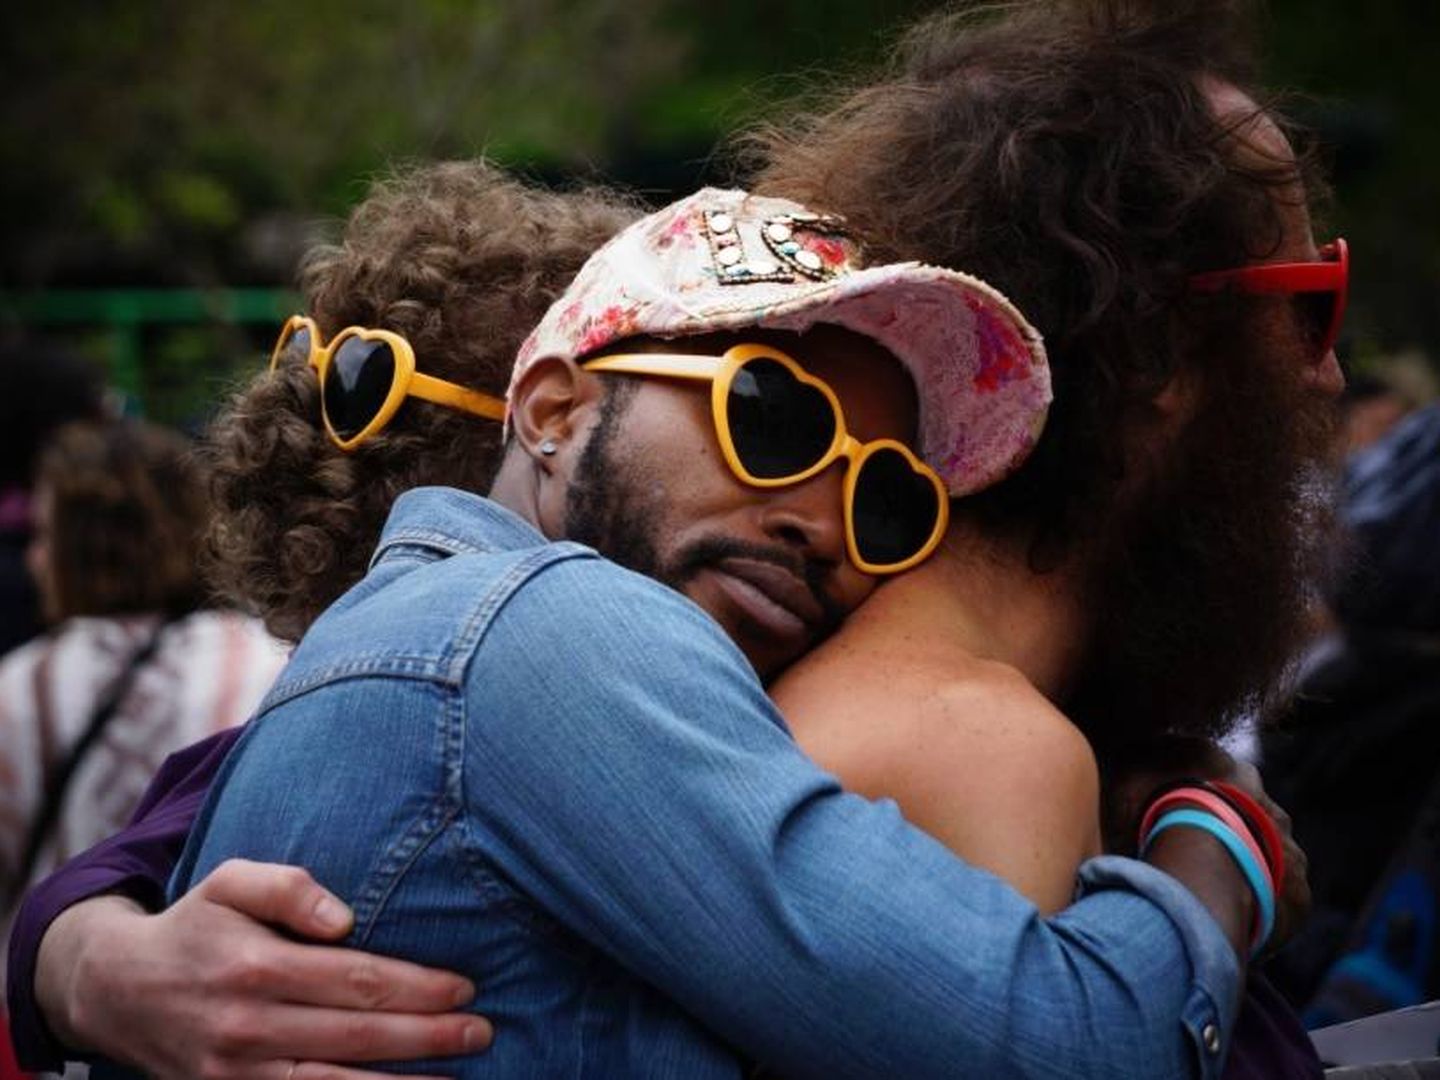 Un hombre abraza a otro durante un festival | Pxhere